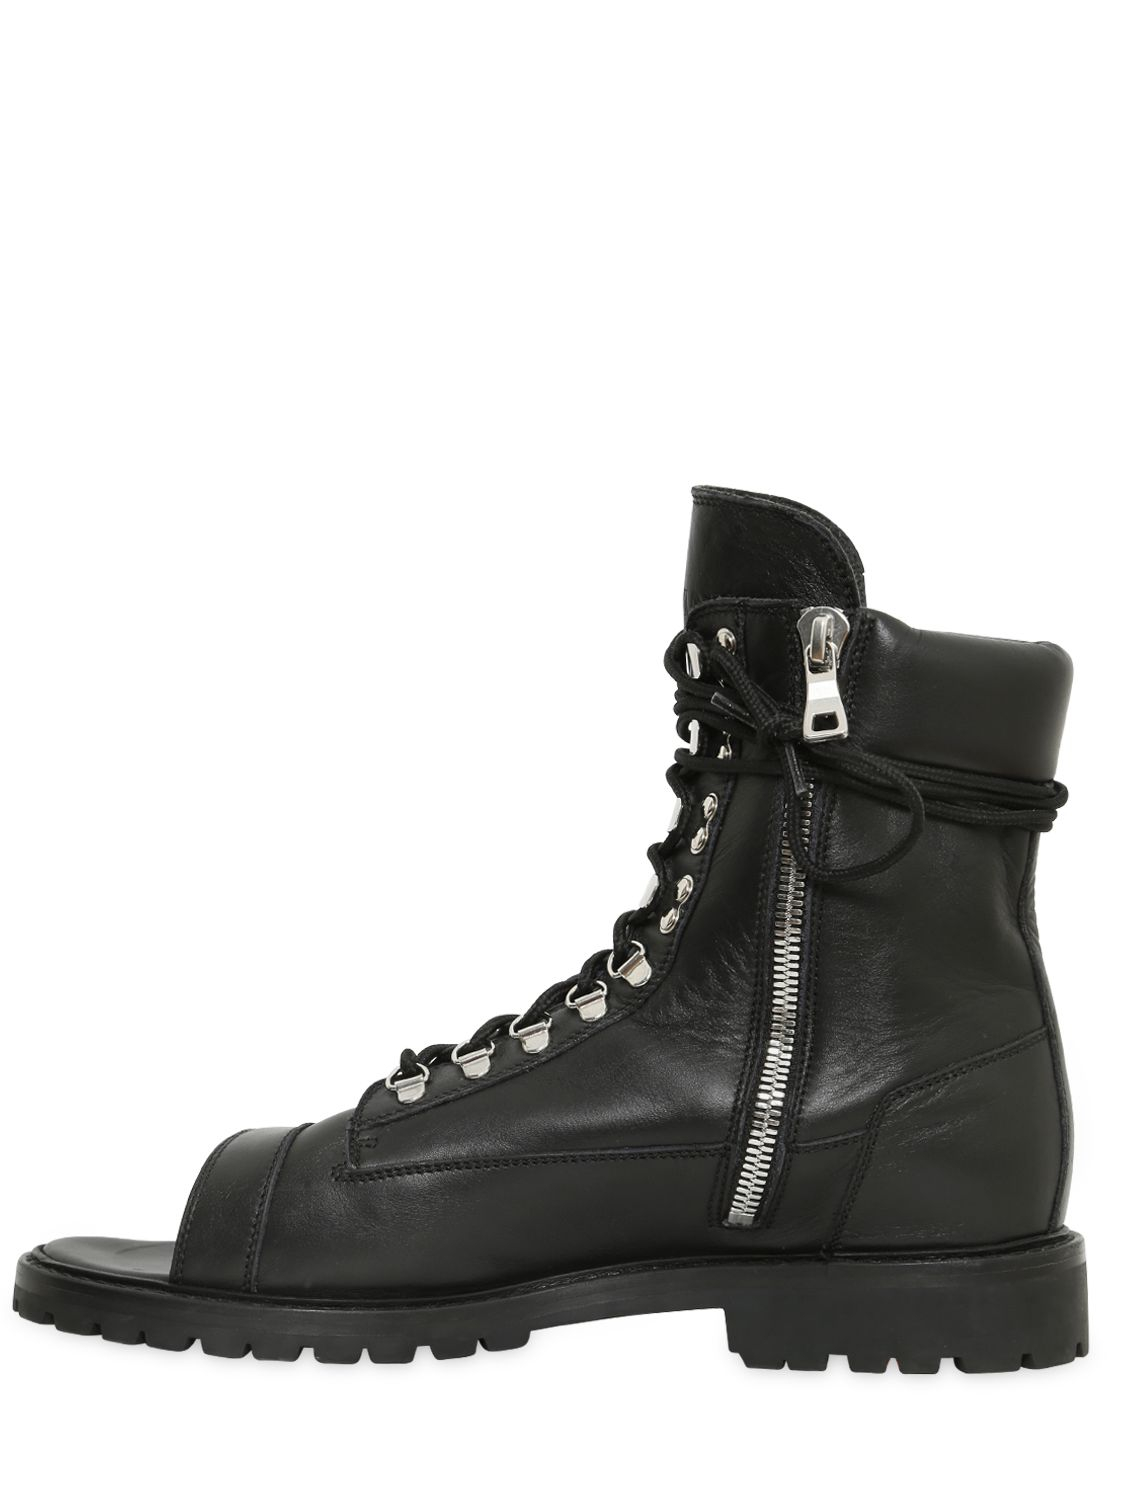 open toe combat boots